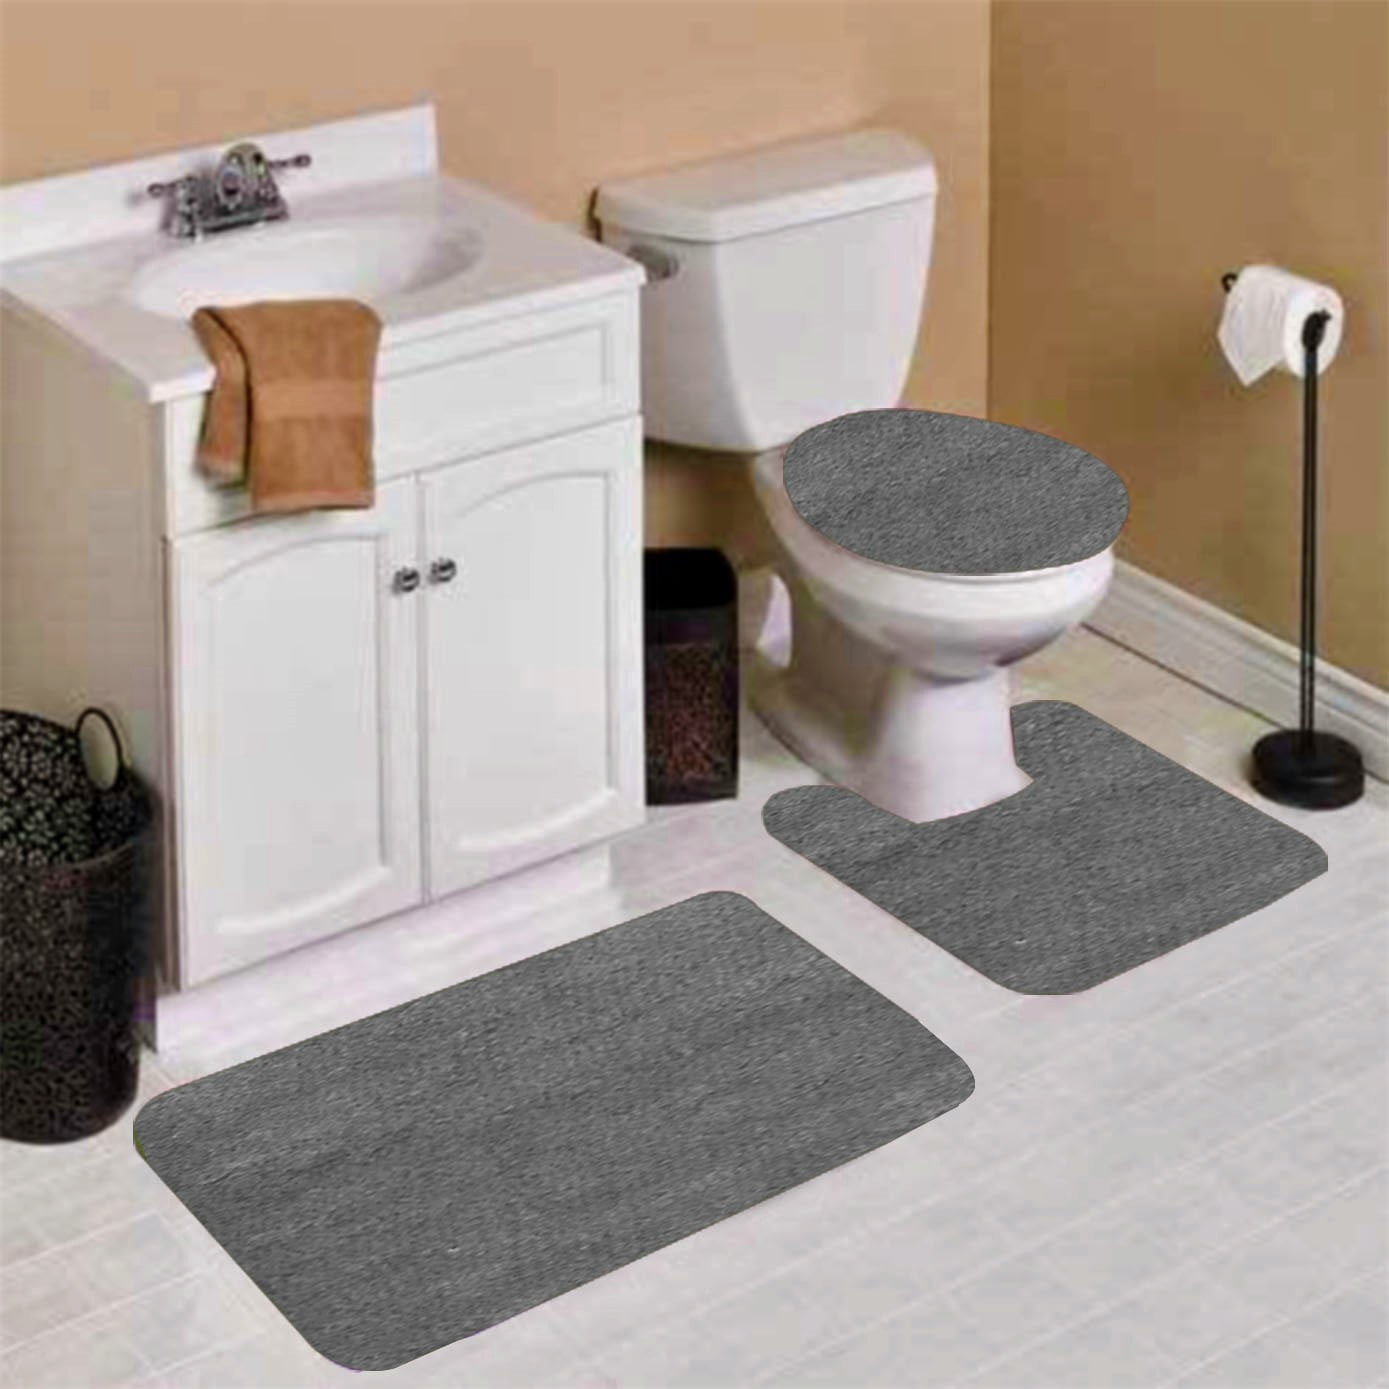 Details about   Lion Shower Curtain Set Bathroom Rug Thick Non-Slip Toilet Lid Cover Bath Mat 